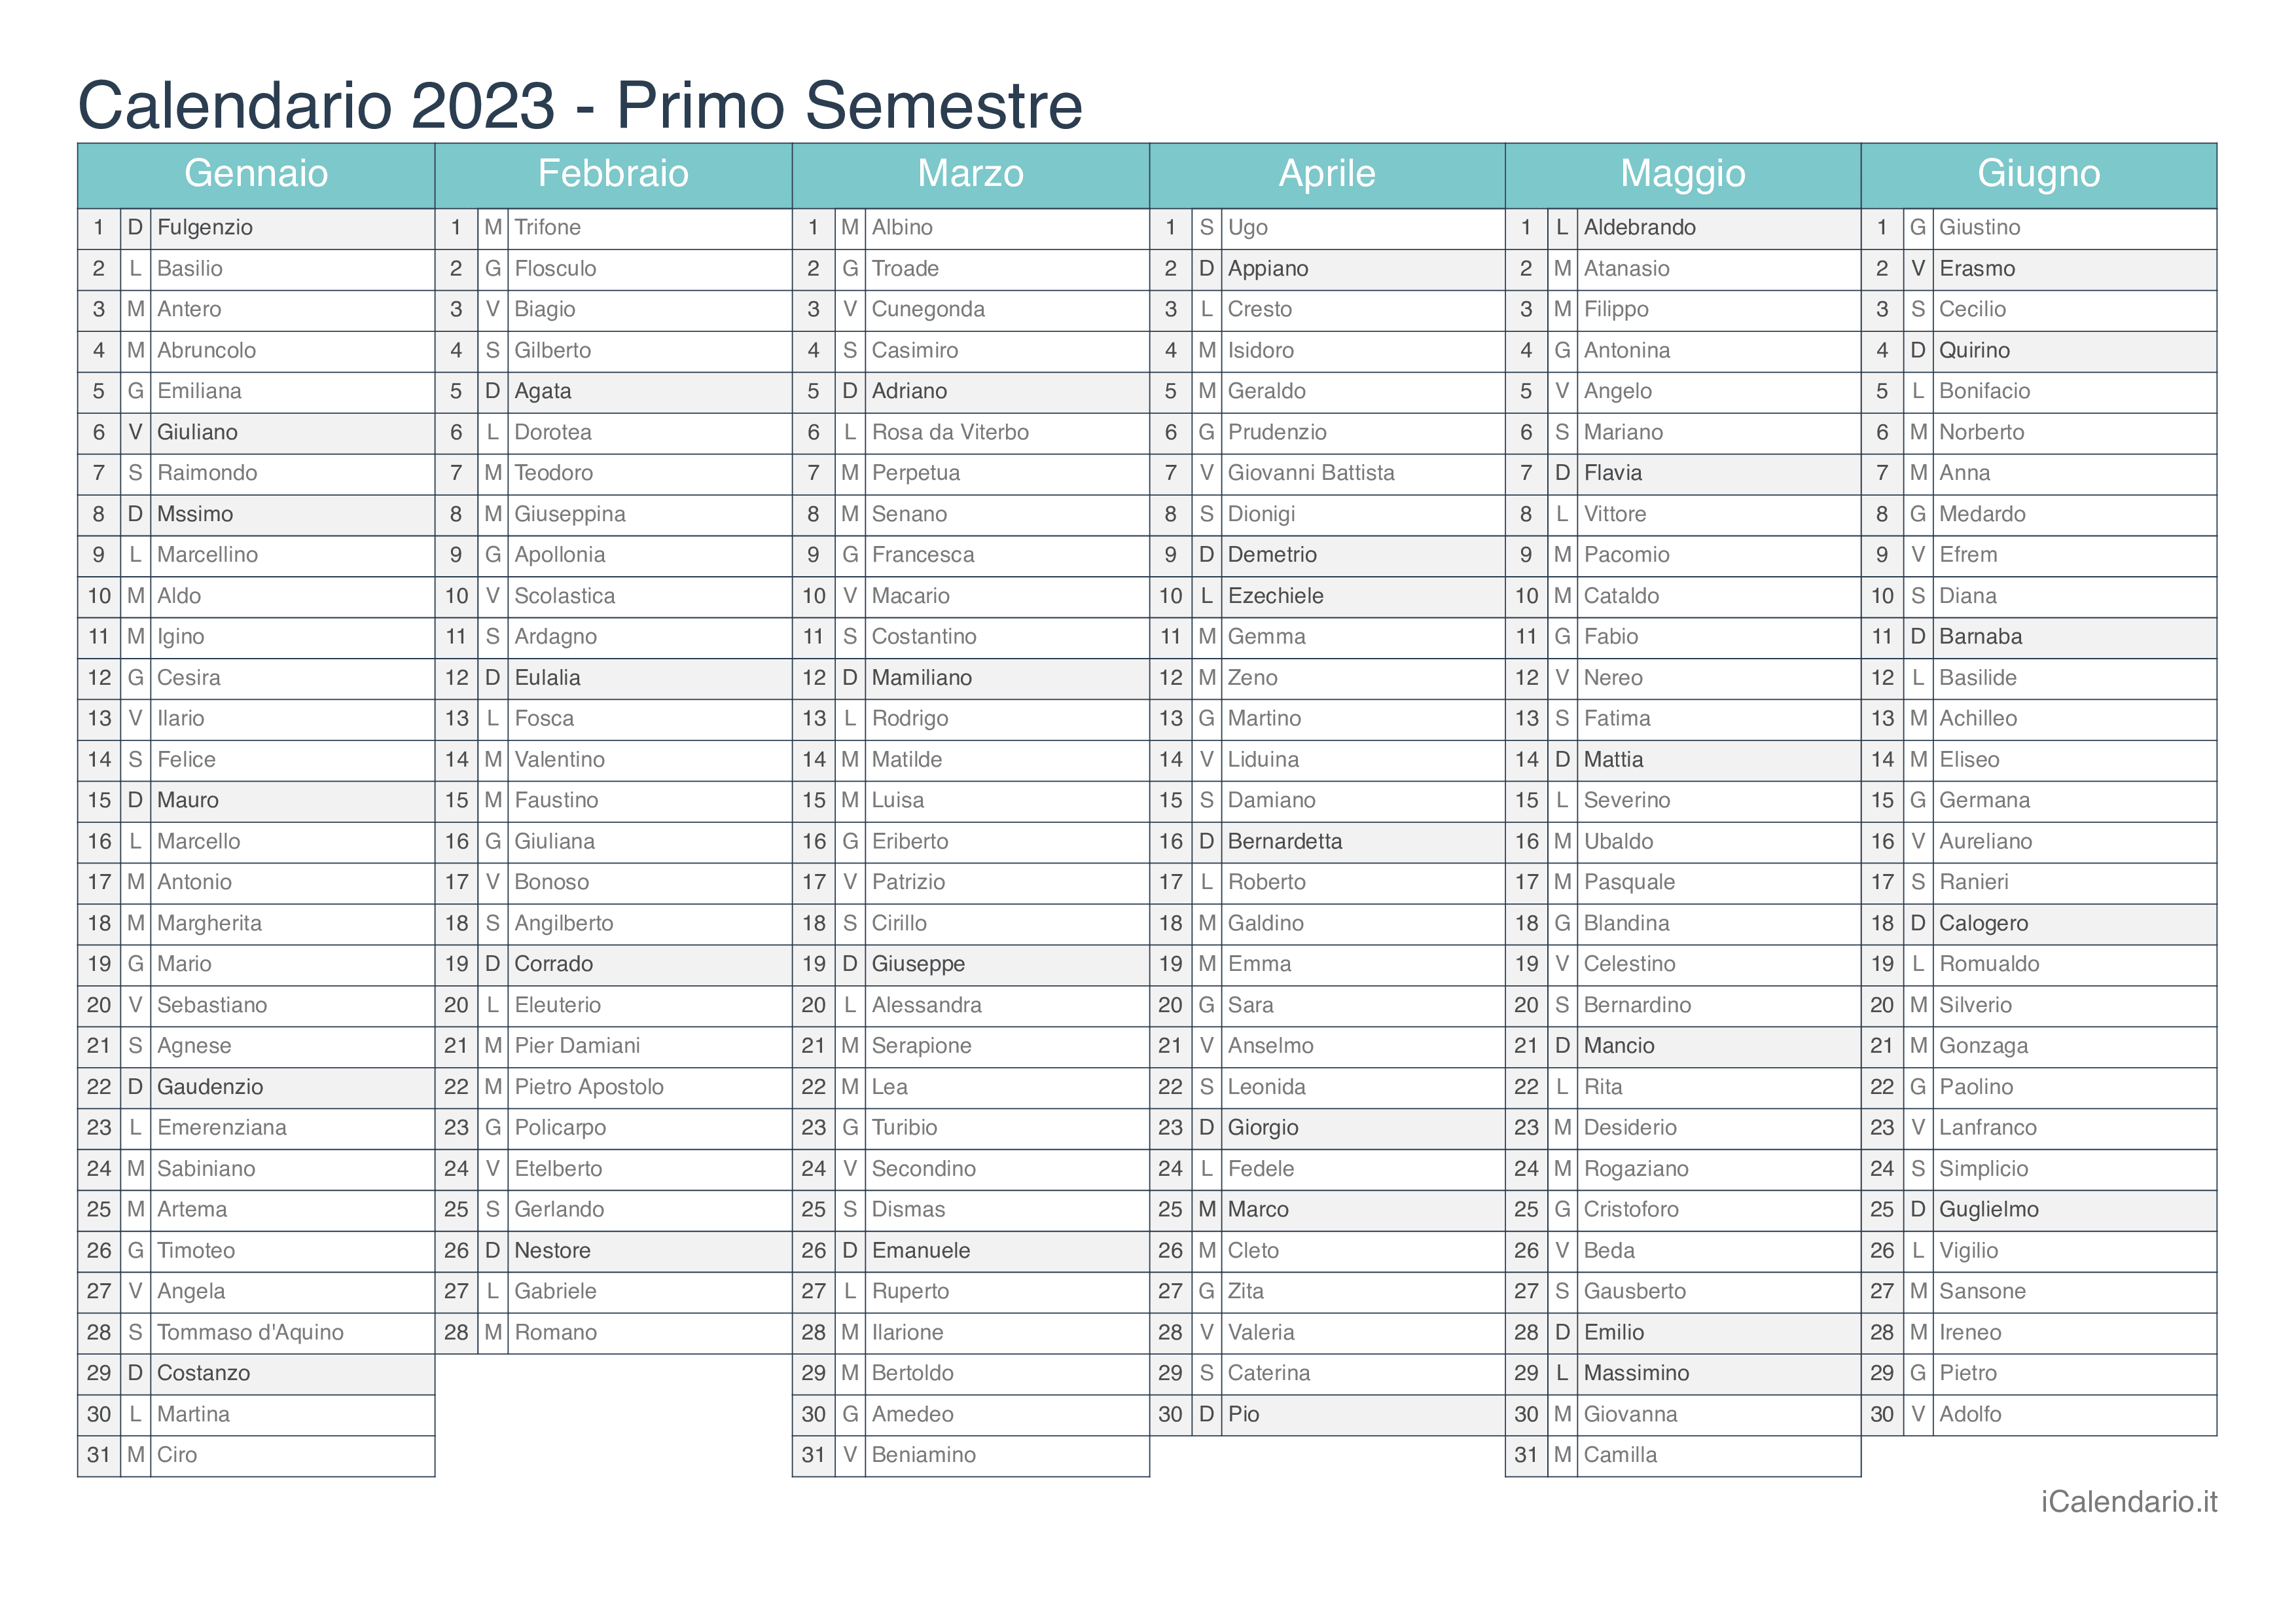 Calendario semestrale 2023 con santi e festivi - Turchese